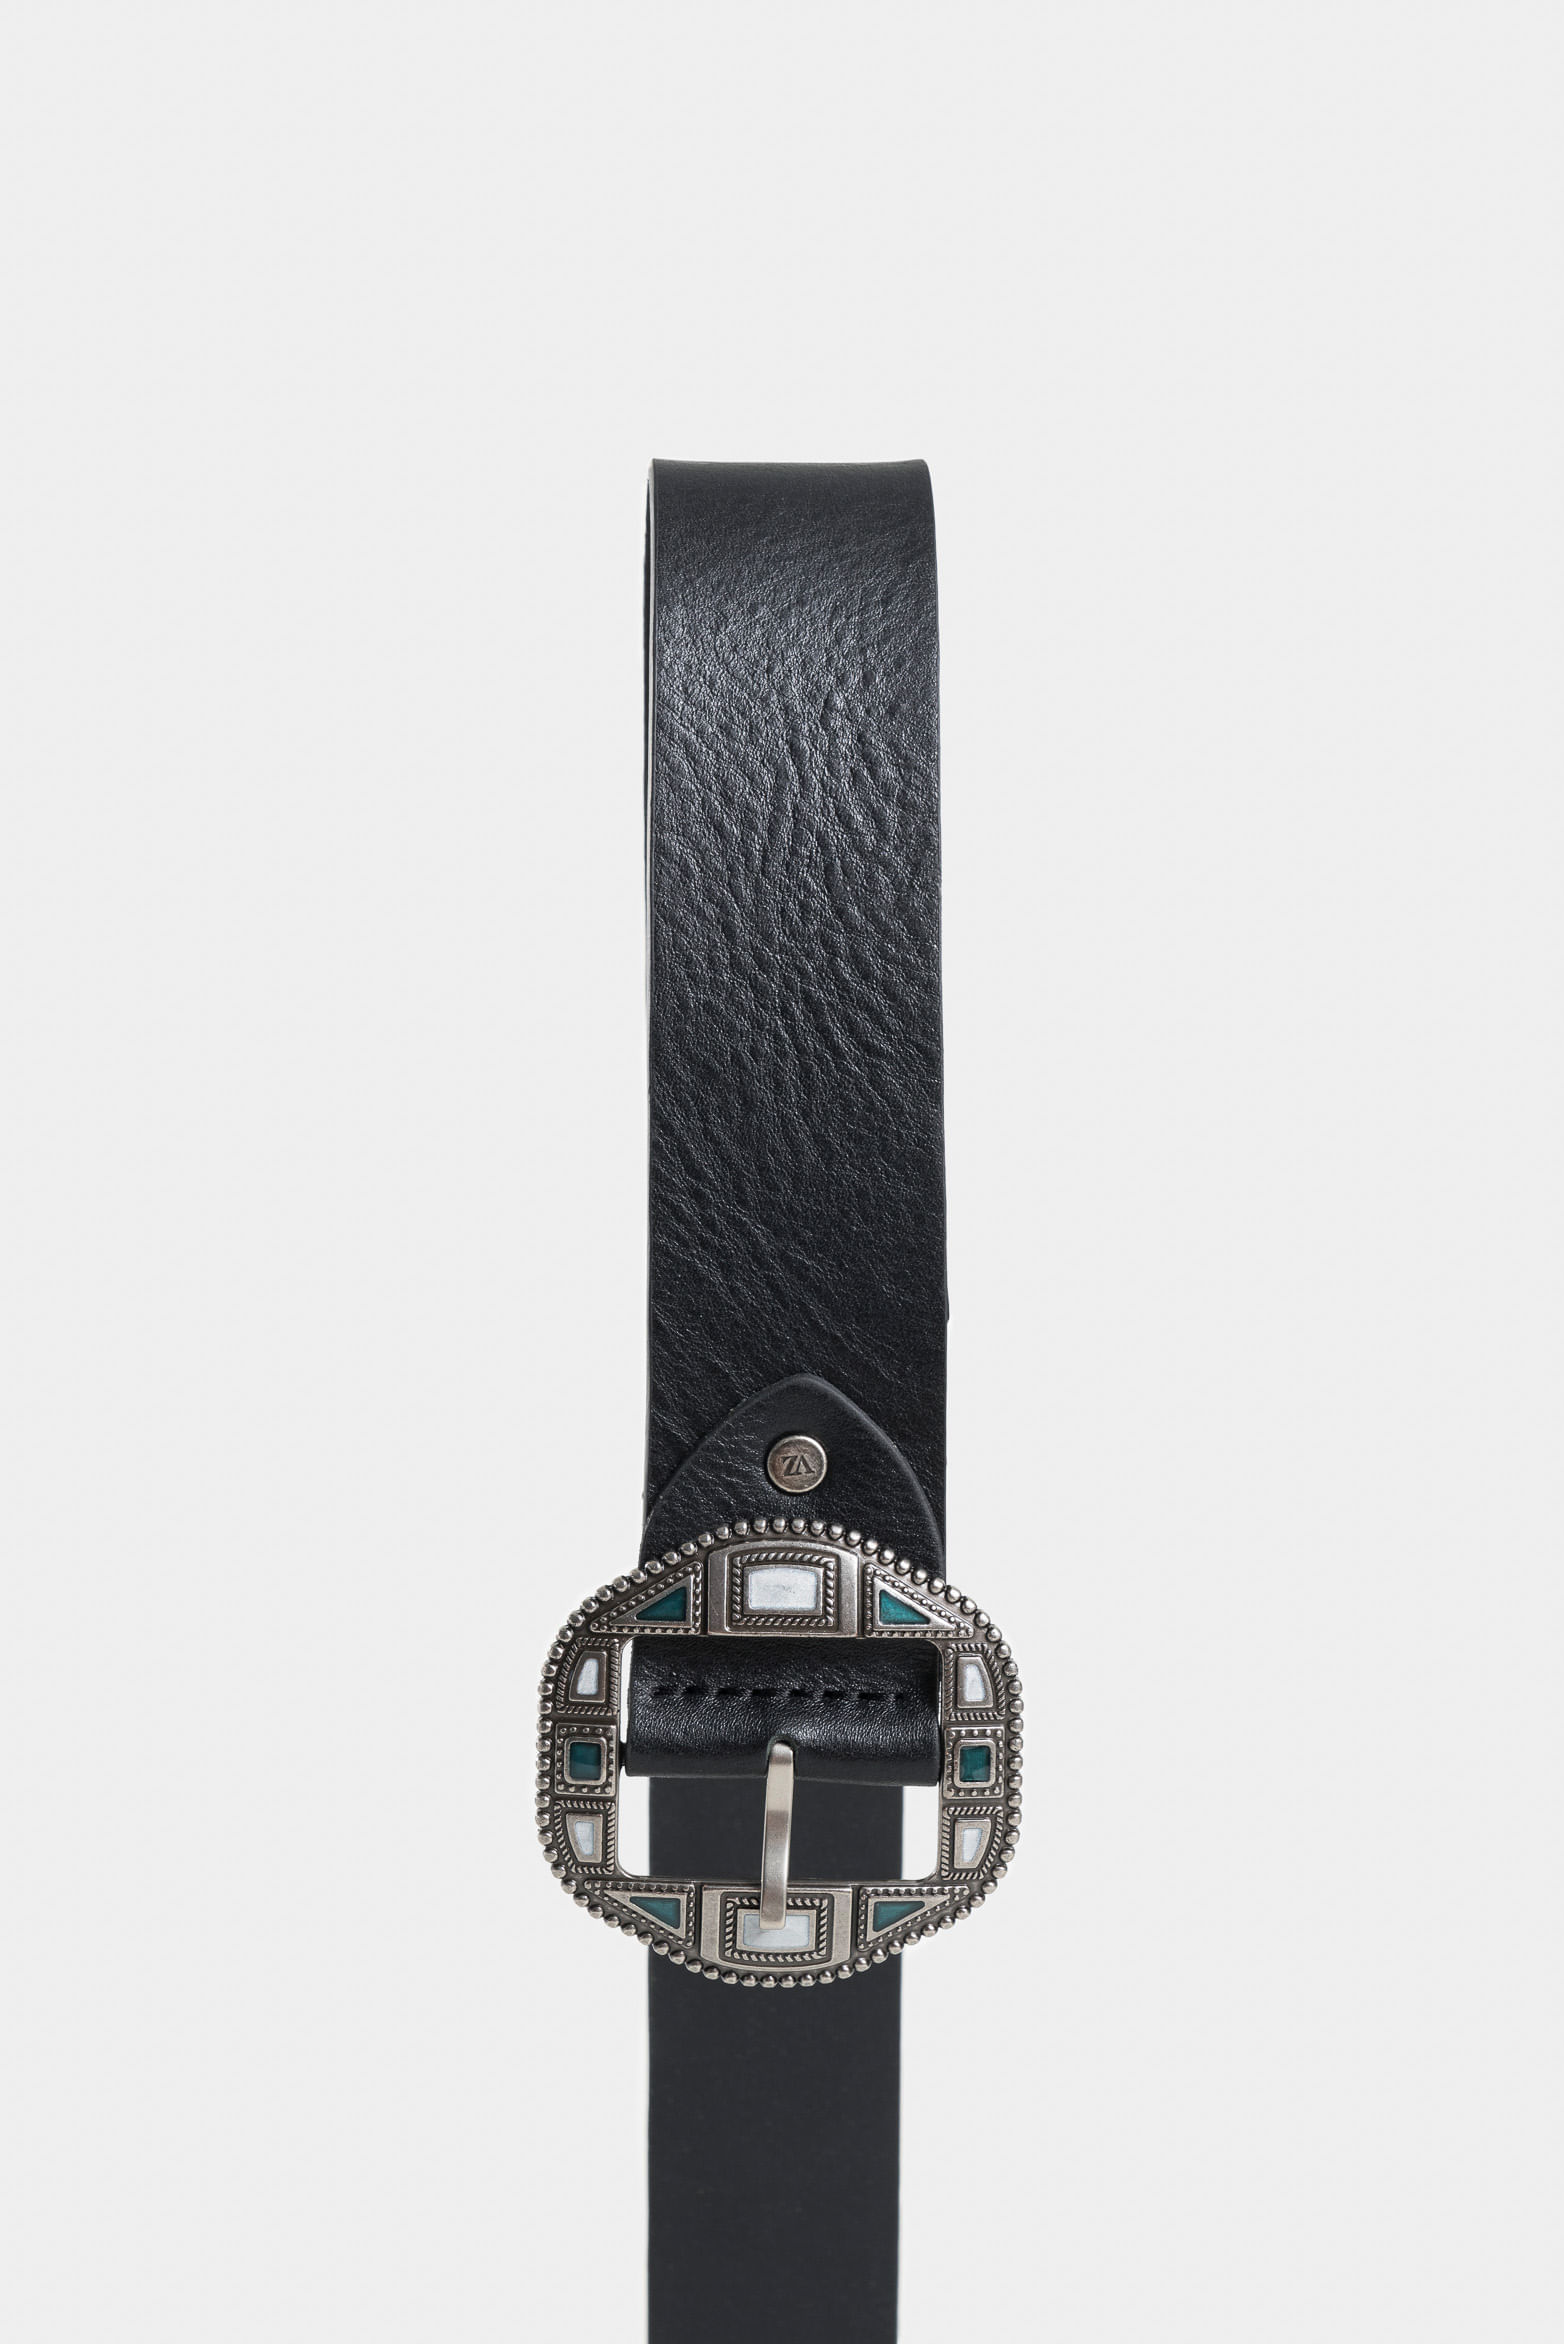 20 hebillas de cinturón de plata de 1/2 pulgadas con anillo rectangular  ajustable Tri-Glide DIY de cuero para zapatos, mochila, ropa, bolsa,  correa